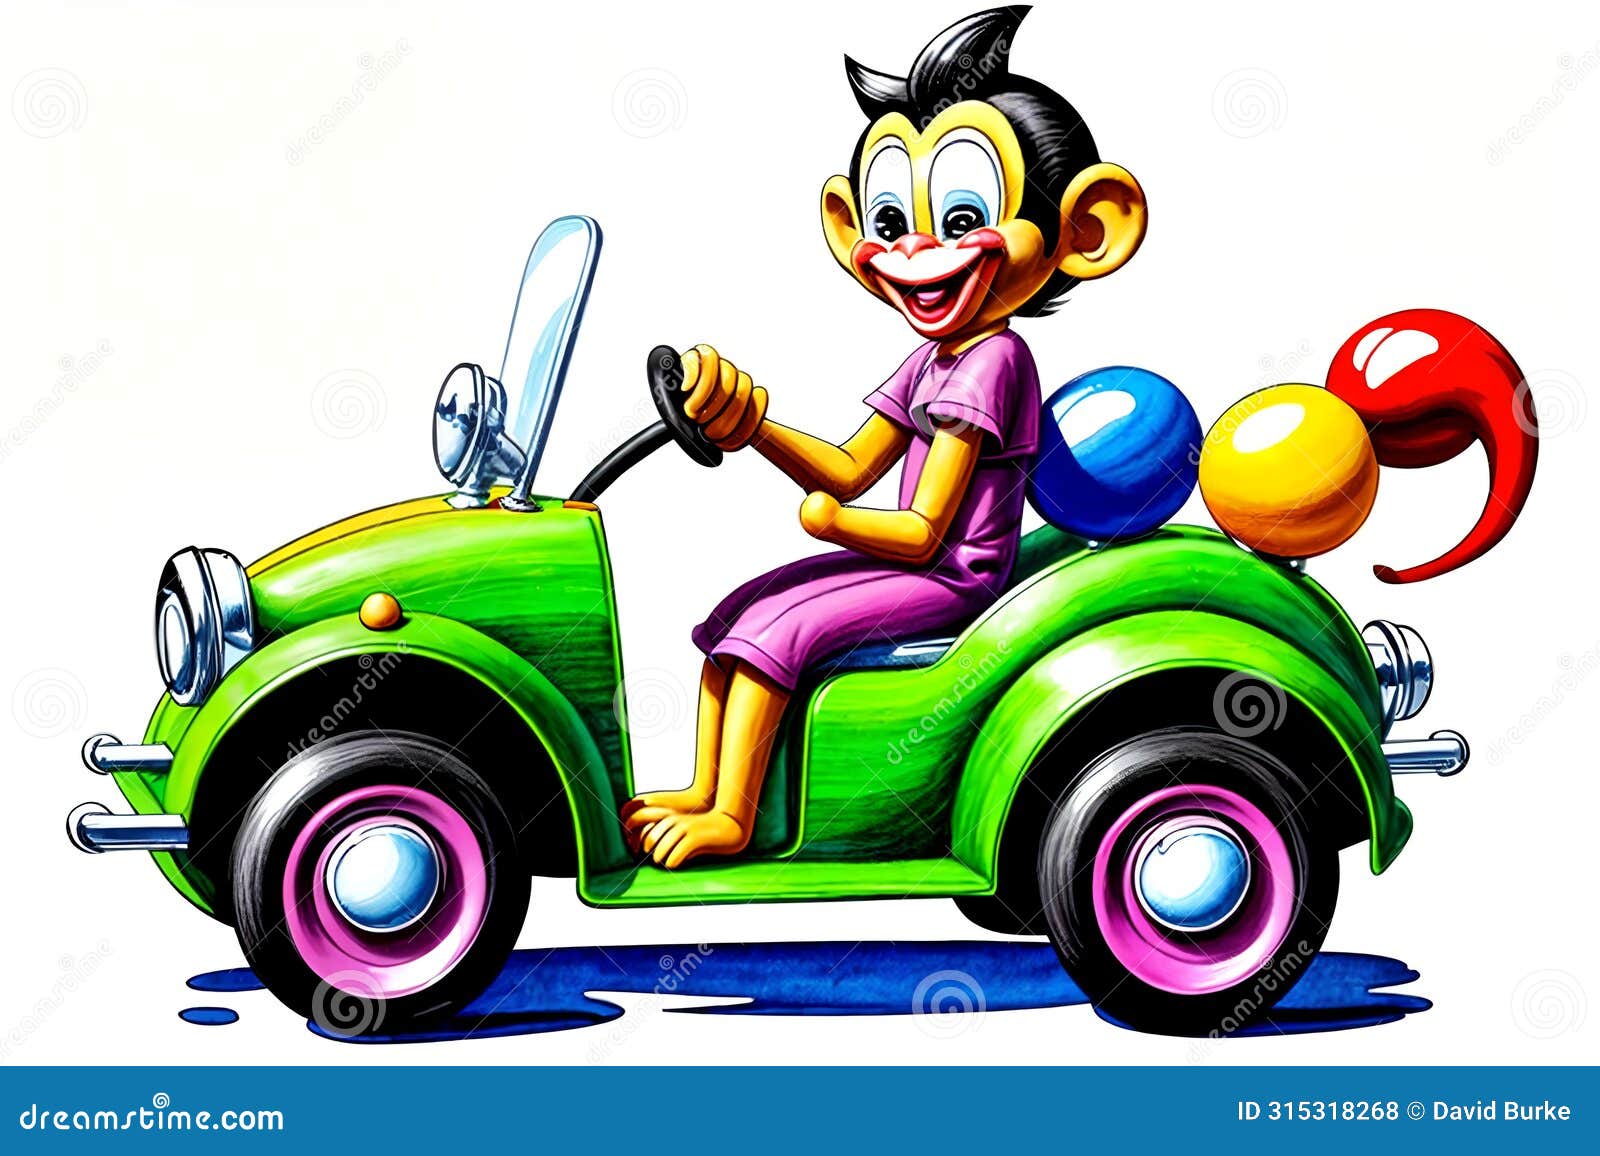 cartoon comic smile toy carnival parade bumper car fun